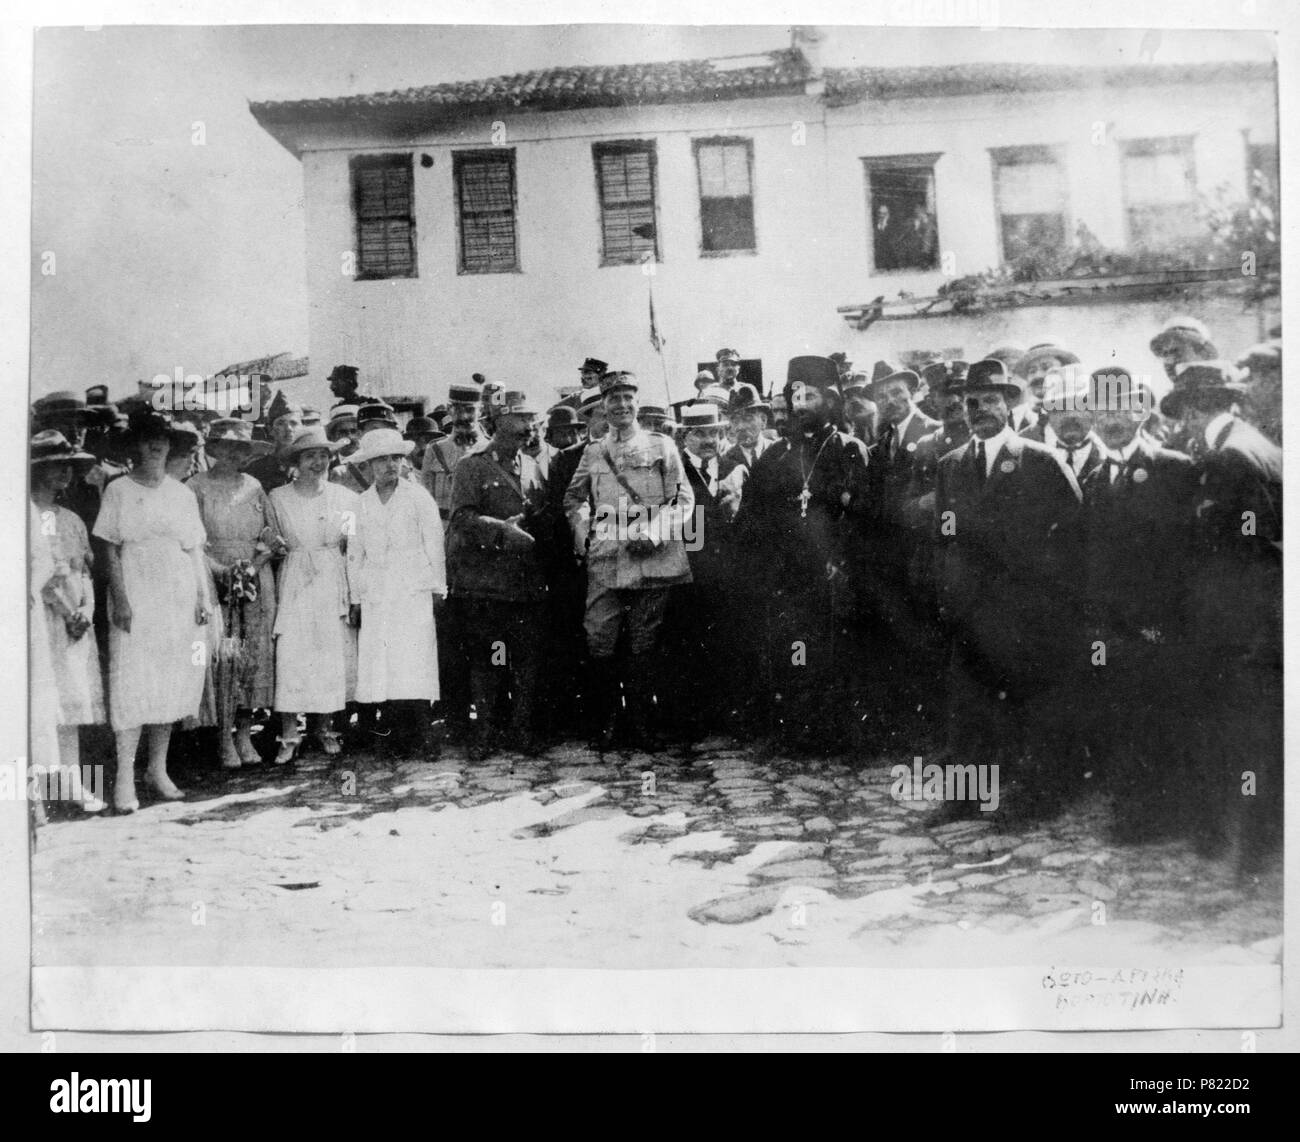 Ελληνικά: 14 Μαΐου 1920: Ιστορική εικόνα απελευθέρωσης της Κομοτηνής από την Βουλγαρική κατοχή, Ροδόπη, Θράκη, ελλάδα. Κέντρο διακρίνεται Στο ο Γάλλος στρατηγός Σαρπύ (Charles Antoine Charpy, 1869-1941). Στα δεξιά του ο Έλληνας στρατηγός Ζυμβρακάκης στα αριστερά Bδder του ο Έλληνας διπλωμάτης Χαρίσιος Βαμβακάς Englisch: 14. Mai 1920: historisches Bild der Befreiung von Komotini aus der Bulgaren, Rhodopen, Thrakien, Griechenland. 14 Mai 1920 7 19200514 Ende der bulgarischen Besatzung von Komotini (historisches Foto) westlichen Thrakien Griechenland Stockfoto